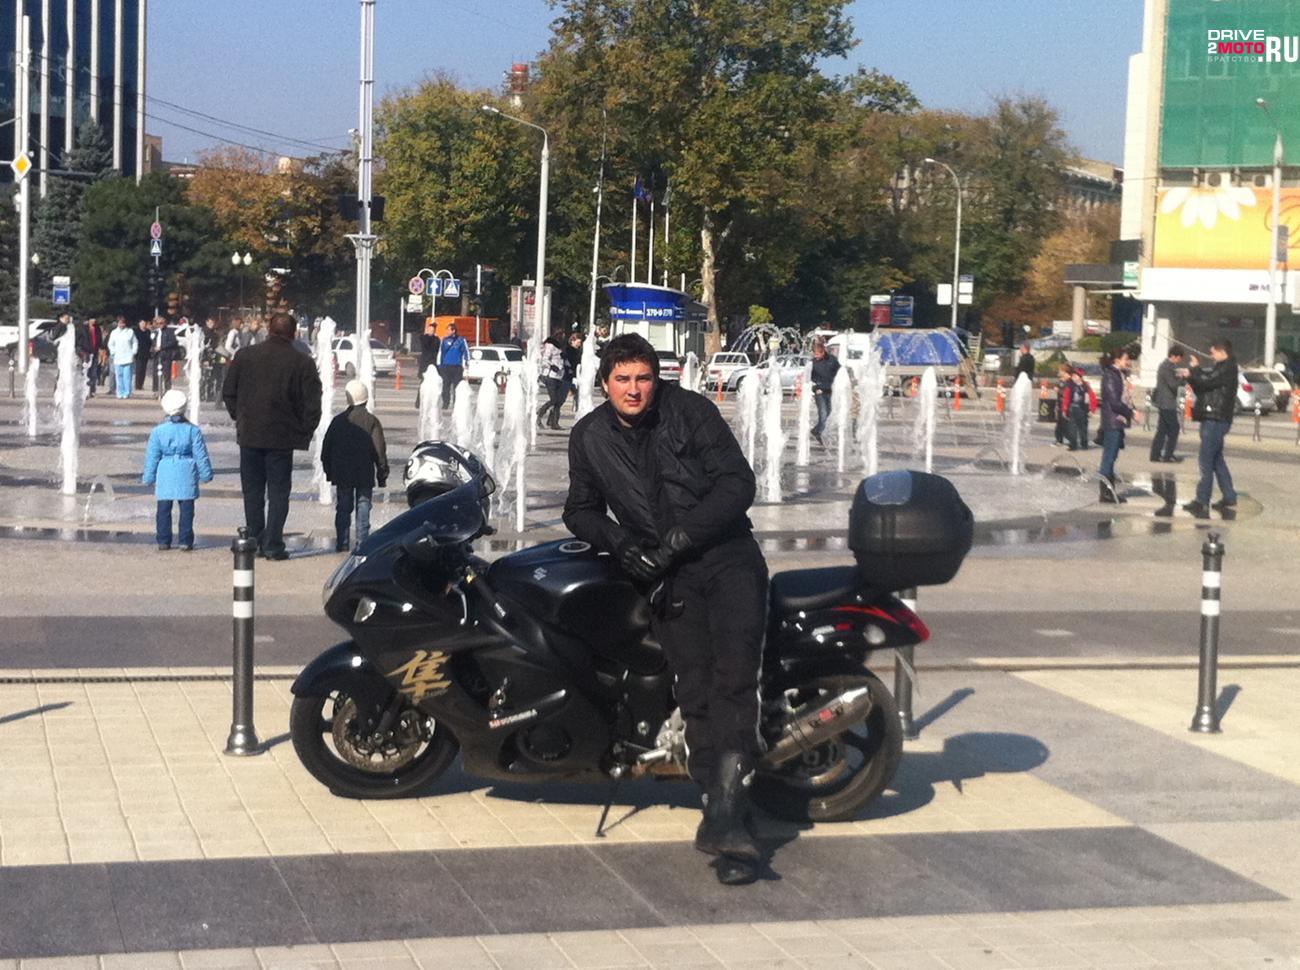 мотоцикл Suzuki - Hayabusa - это я приехал в краснодар +4